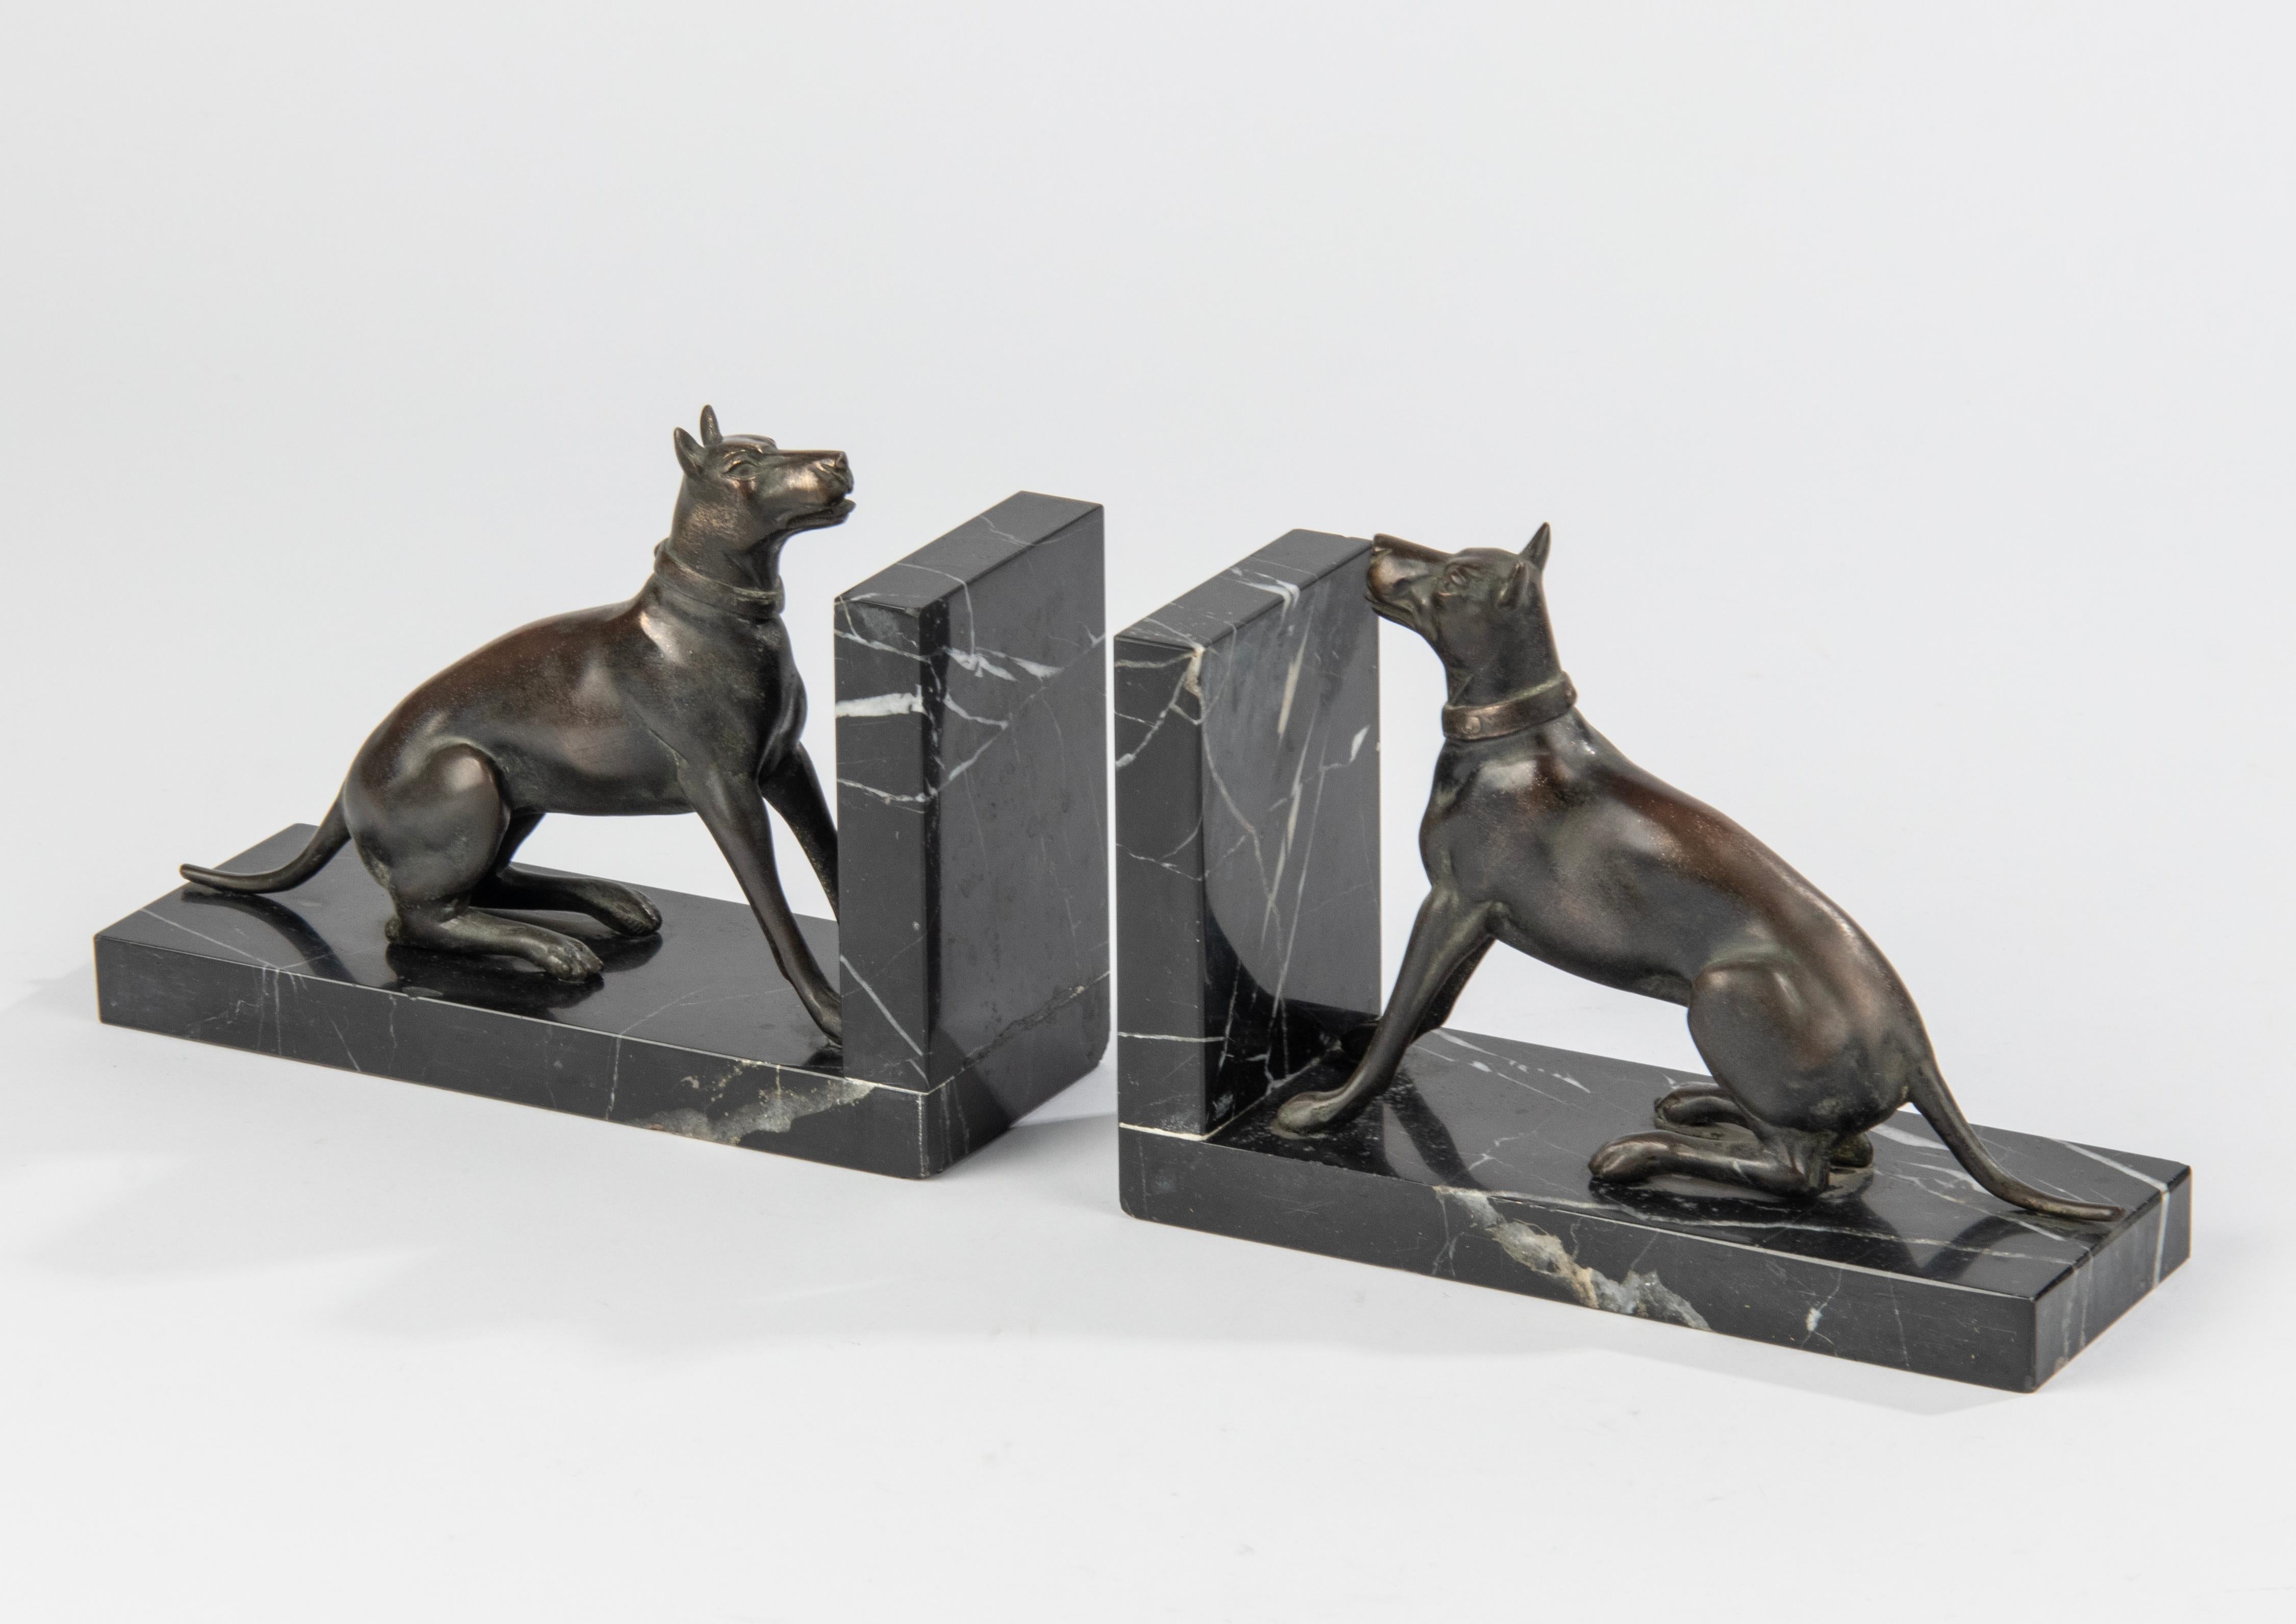 Ein Paar Art Deco Buchstützen mit Skulpturen von Hunden, wahrscheinlich Dansih Hunde. Die Figuren sind aus patiniertem Zinn (Zinklegierung) gefertigt. Die Sockel sind aus schwarzem Marmor mit weißen Adern gefertigt. Marmor und Figuren sind in gutem